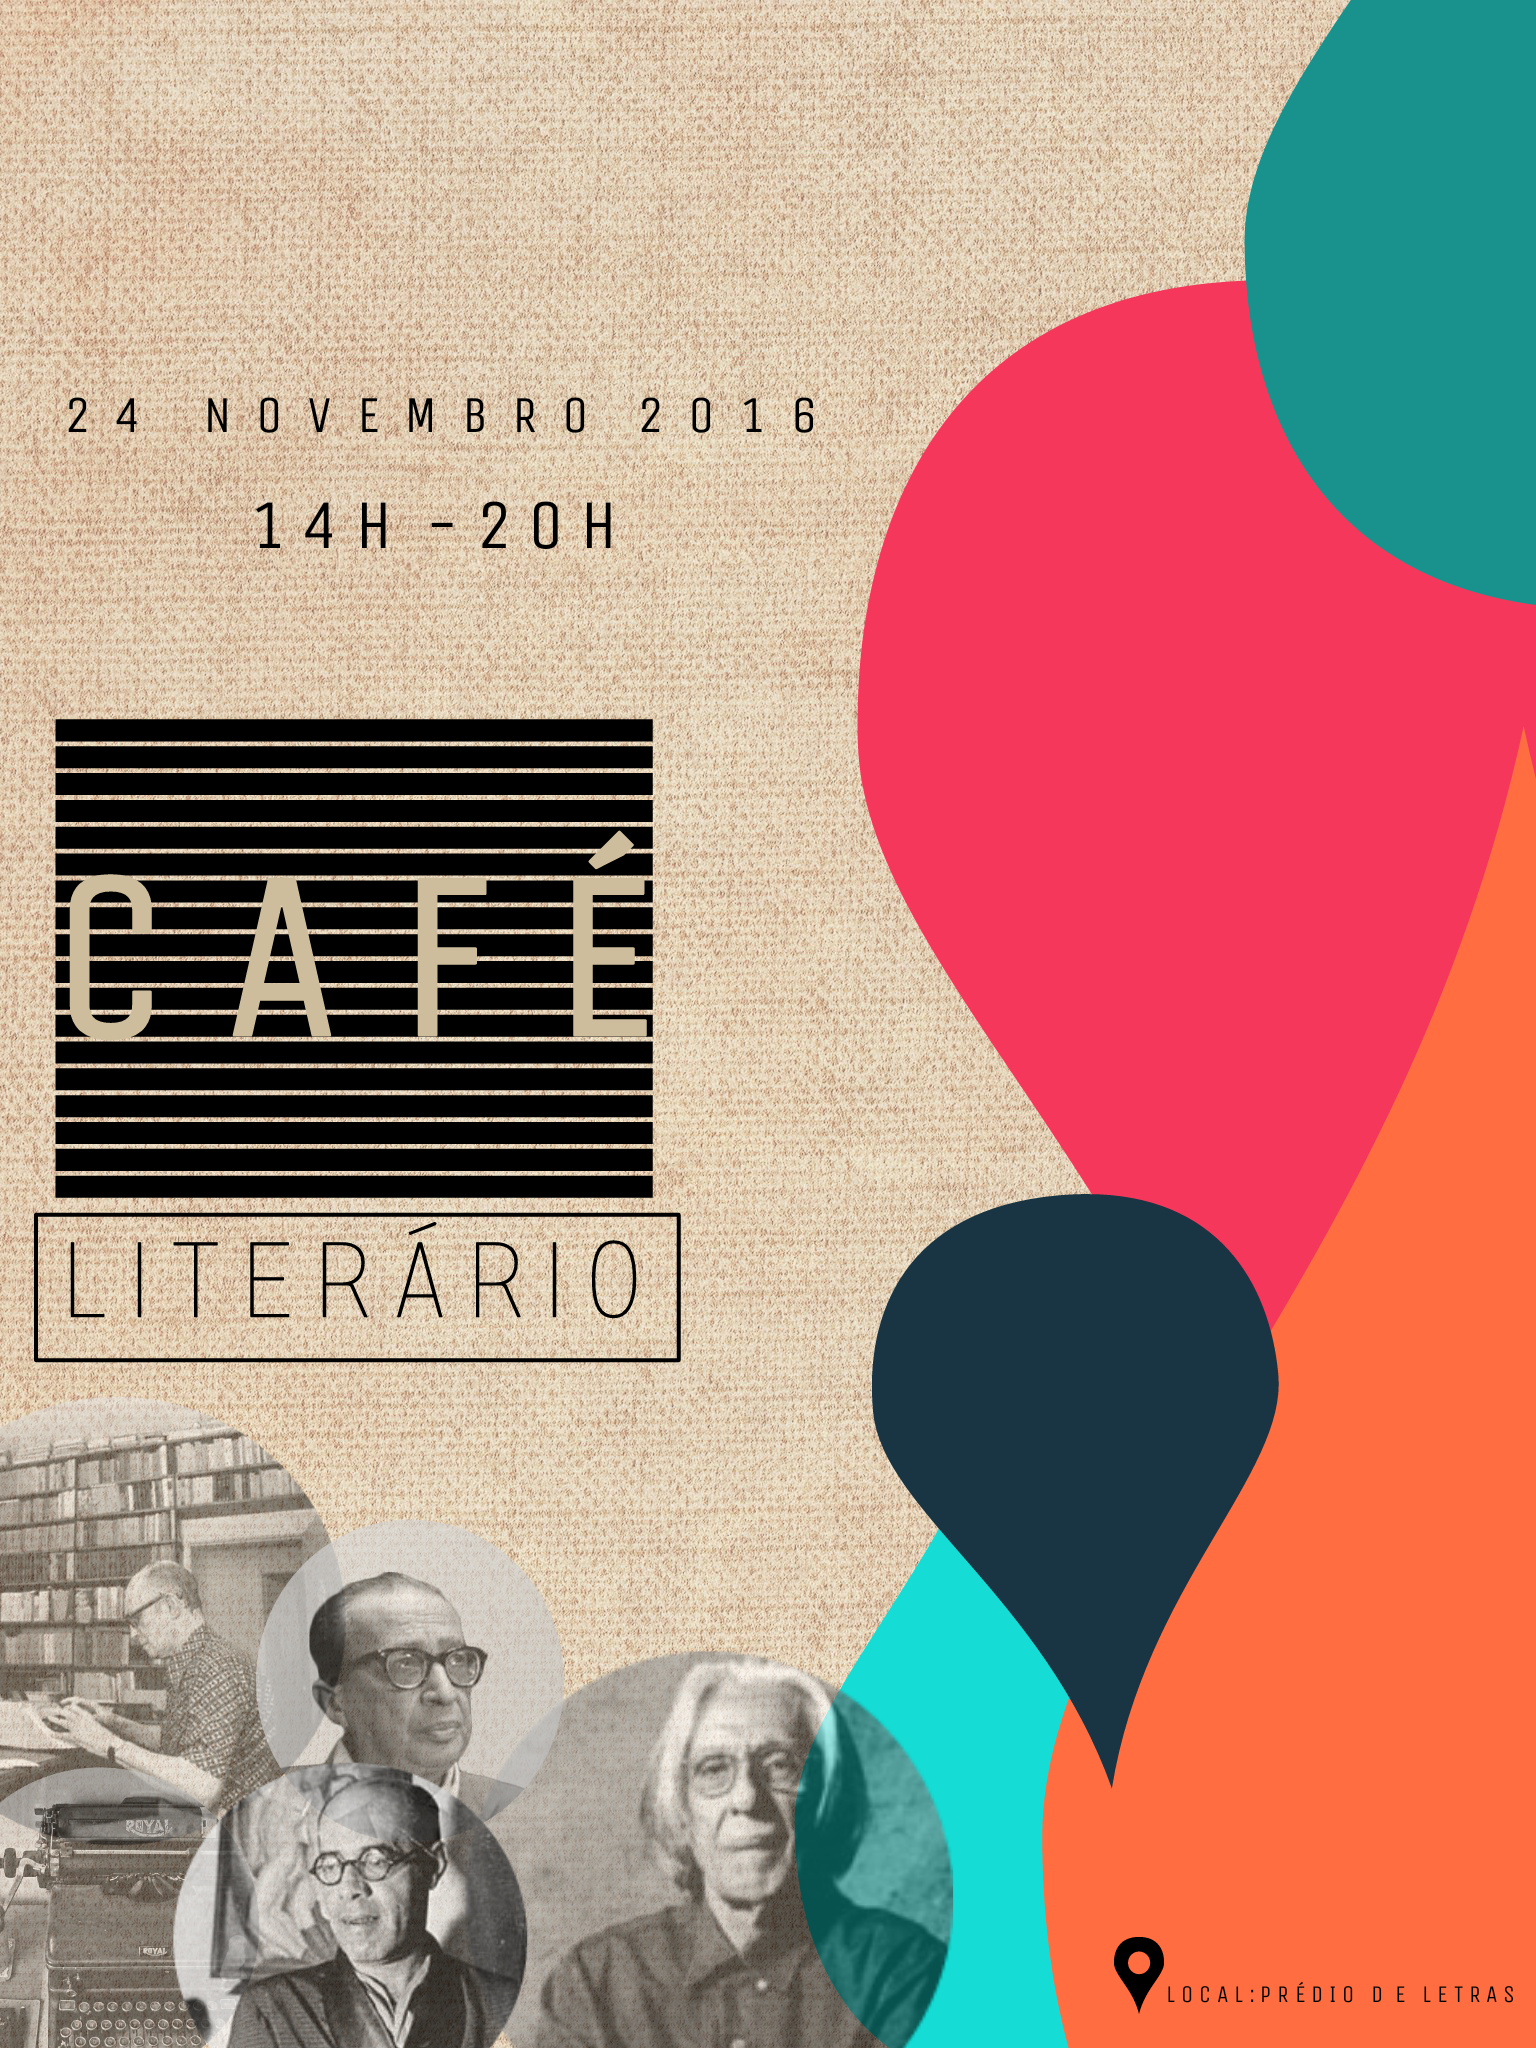 Curso de Letras promove Café Literário dia 24 de novembro